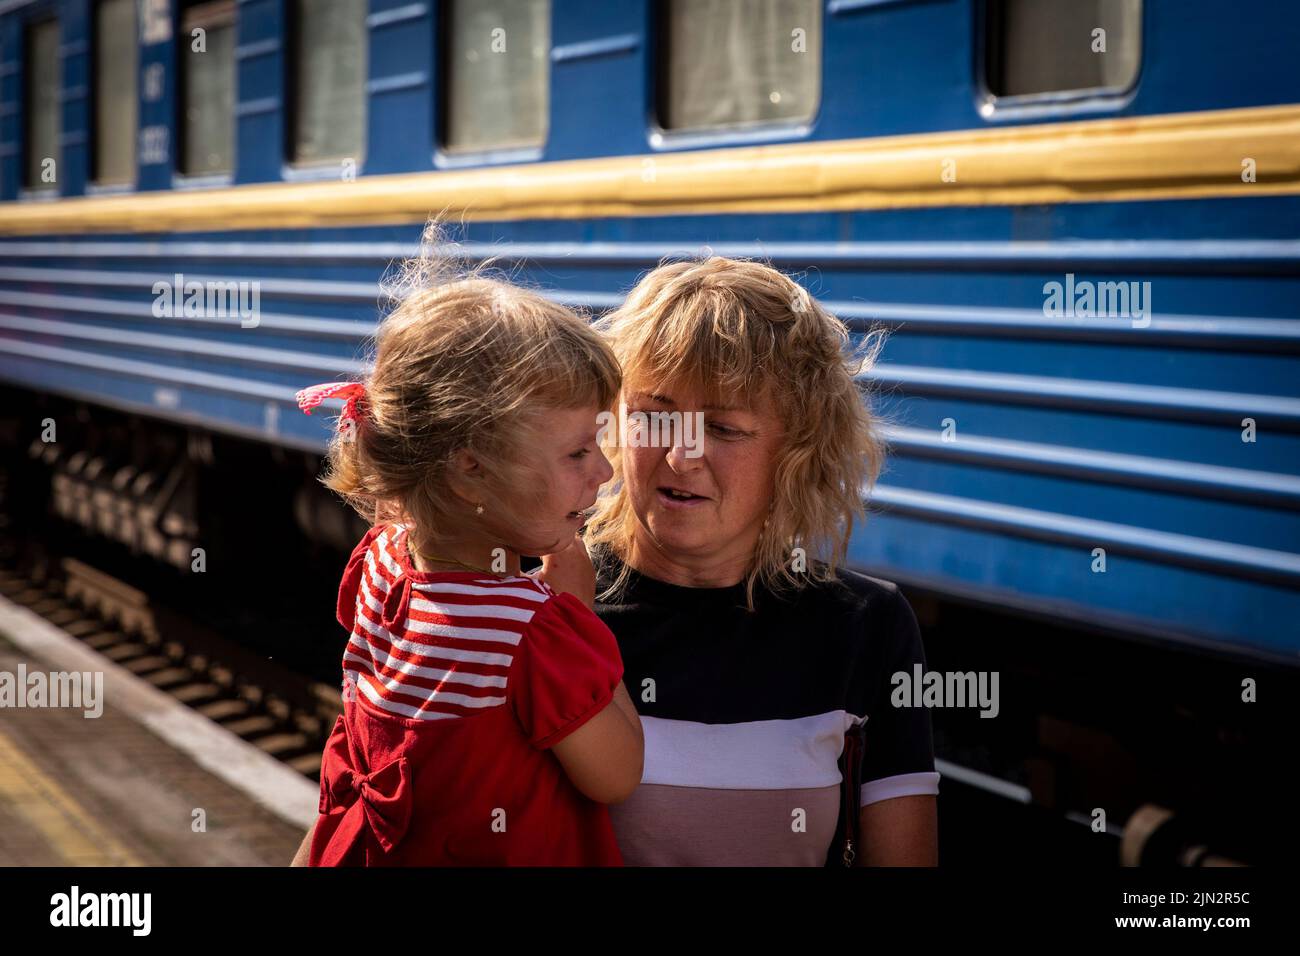 Ein kleines Mädchen weint im Arm ihrer Mutter, als sie am Bahnhof Pokrovsk in den Evakuierungszug geht. Inmitten der intensivierten Kämpfe im östlichen Teil der Ukraine intensiviert die Ostukraine nun ihre zivile Evakuierung, da Millionen ukrainischer Familien aus dem immer näher rückt Krieg evakuiert wurden, da viele von ihnen in den westlichen Teil des Landes verlagert werden.Laut den Vereinten Nationen werden die meisten von ihnen in den Westen des Landes umgesiedelt. Mindestens 12 Millionen Menschen sind seit dem russischen Einmarsch in die Ukraine aus ihrer Heimat geflohen, während sieben Millionen Menschen innerhalb des Landes vertrieben werden. (Foto von Alex Chan Tsz Yuk / SOPA IMAG Stockfoto